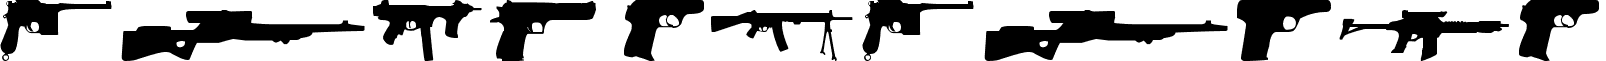 Guns Regular font - Guns 1.ttf